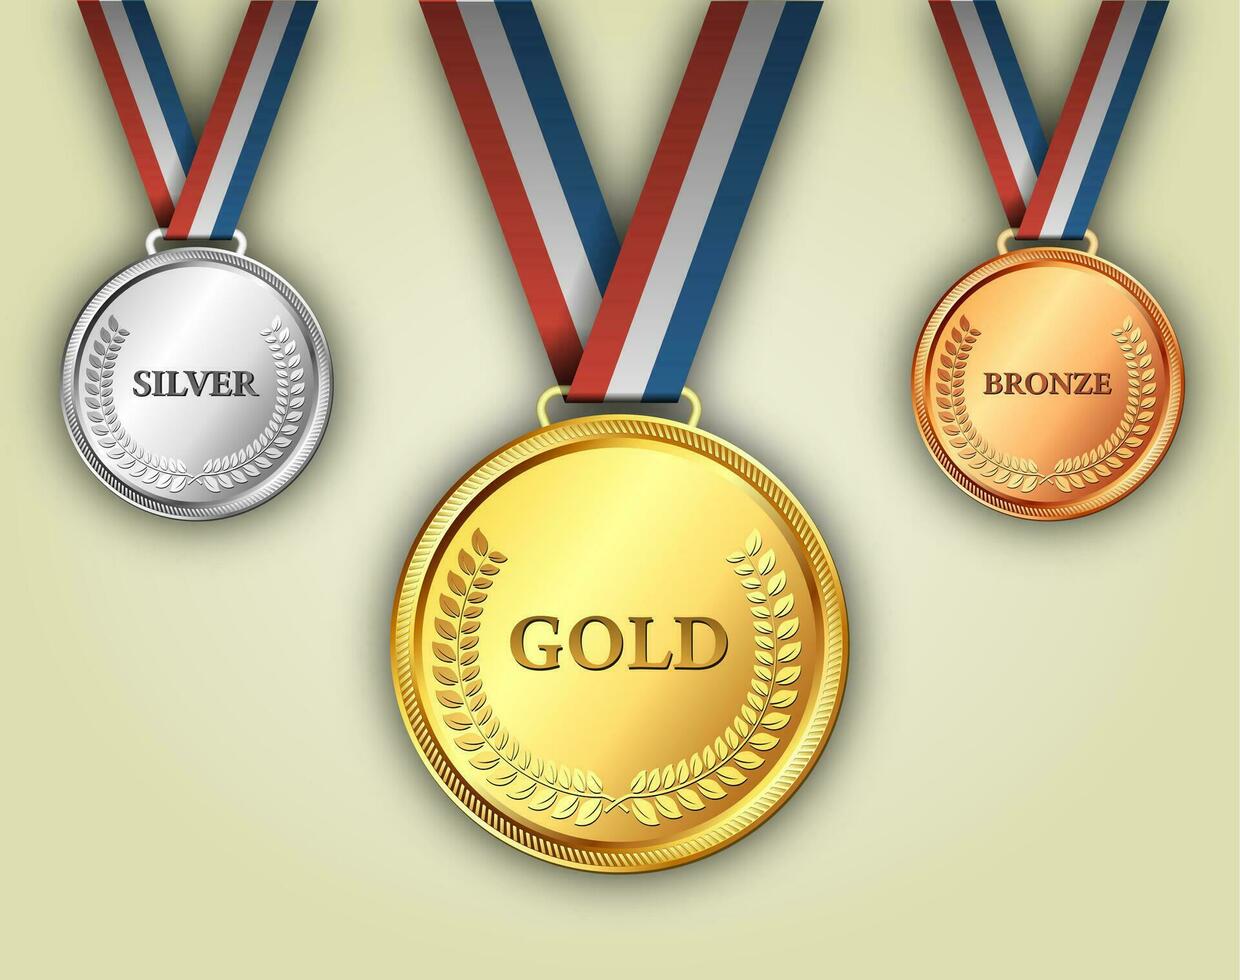 conjunto de medalhas de ouro, prata e bronze vetor